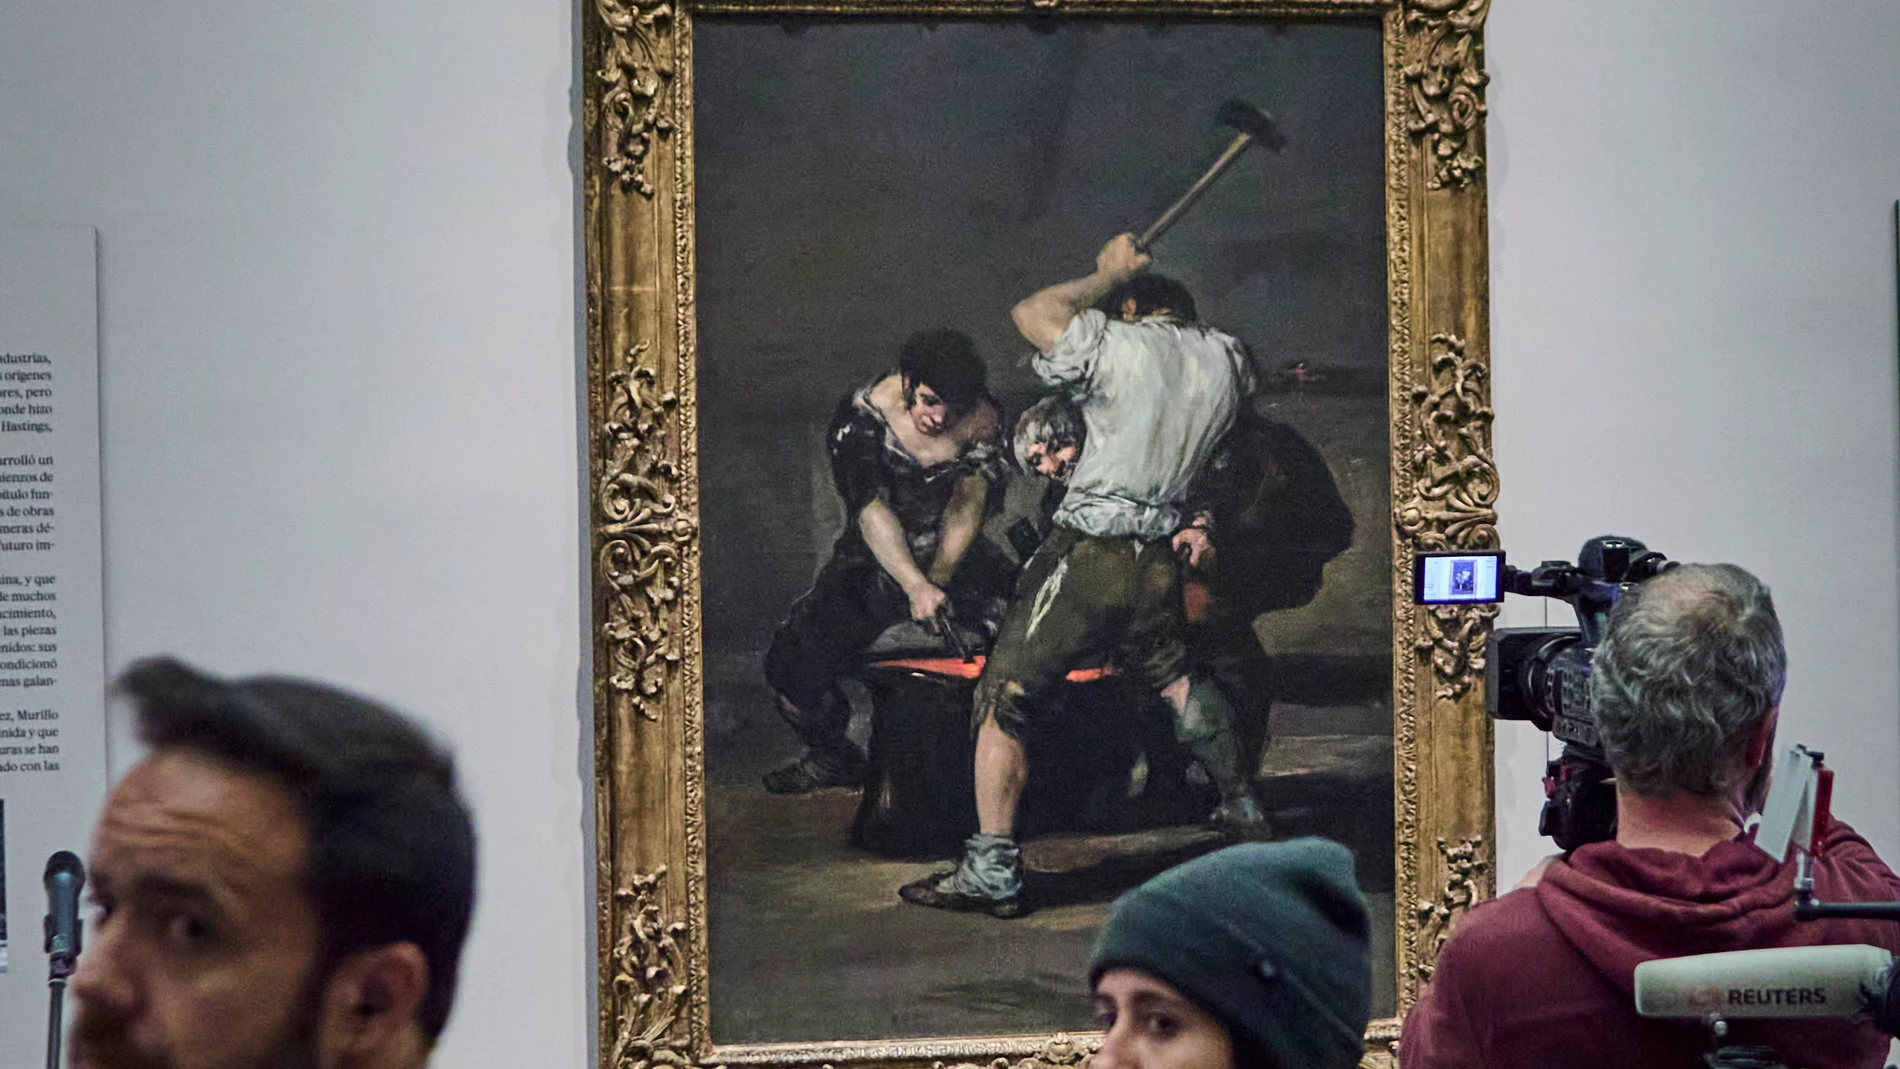 El Museo del Prado y The Frick Collection llegan a un acuerdo para que nueve obras de la colección norteamericana puedan verse a partir de mañana en Madrid en una exposición única.Obras de Velázquez, Goya y Murillo que no se han visto en nuestro país desde que salieron de España podrán ser admiradas en el Prado gracias a este préstamo excepcional y único.